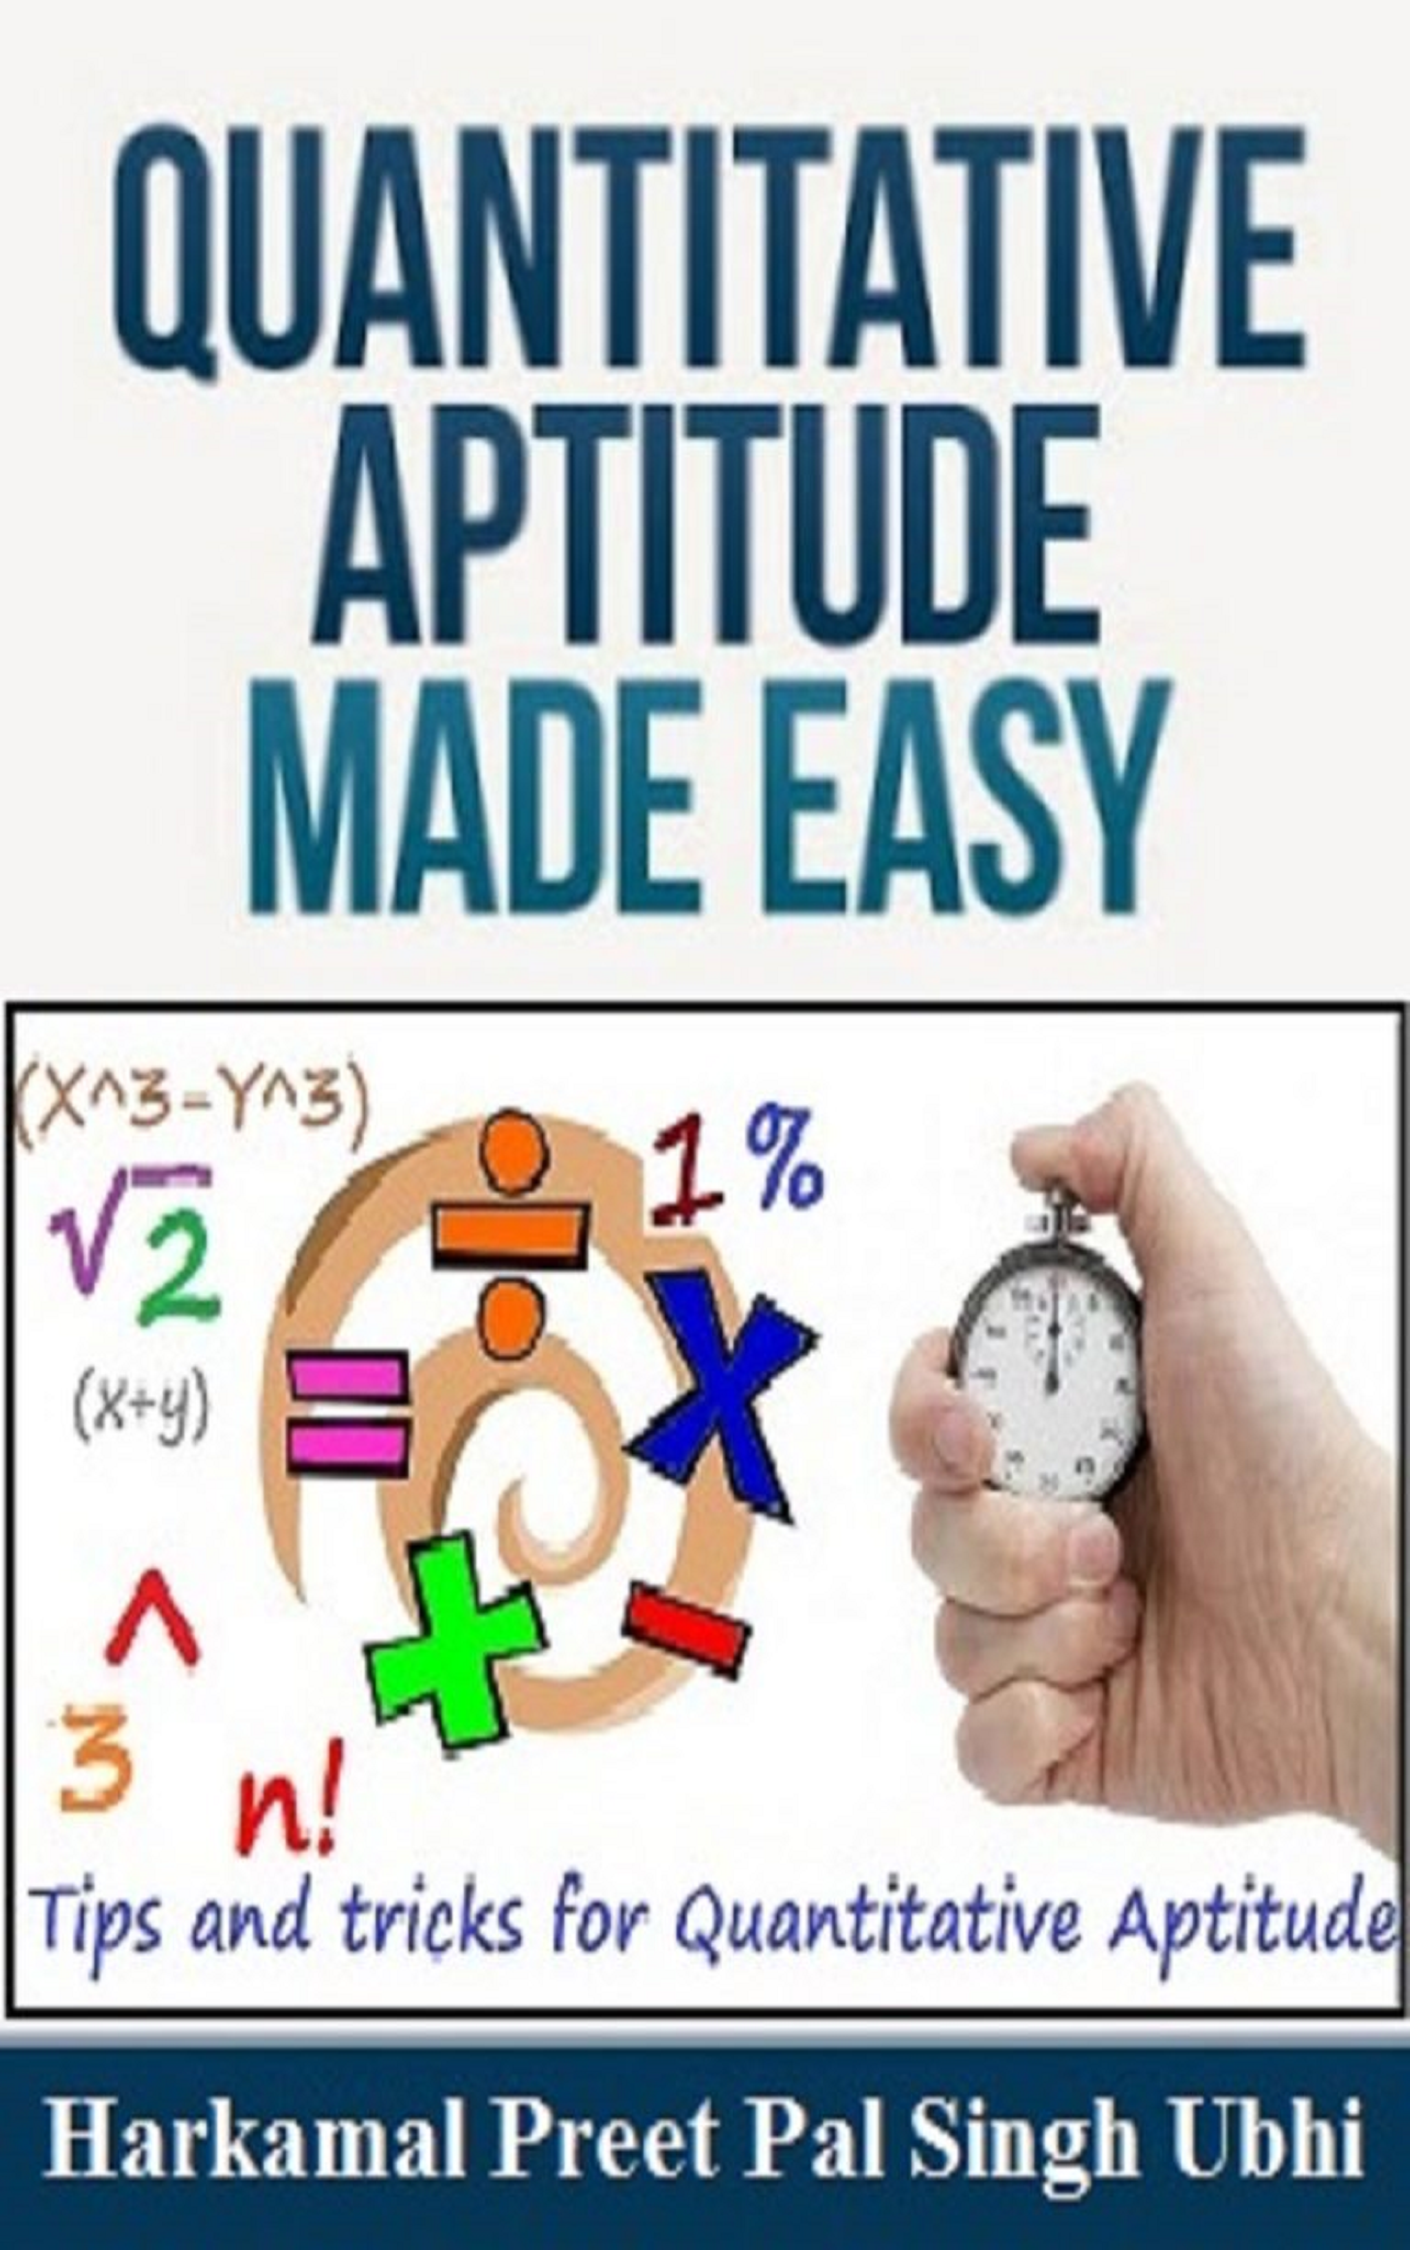 Tips and tricks for Quantitative Aptitude